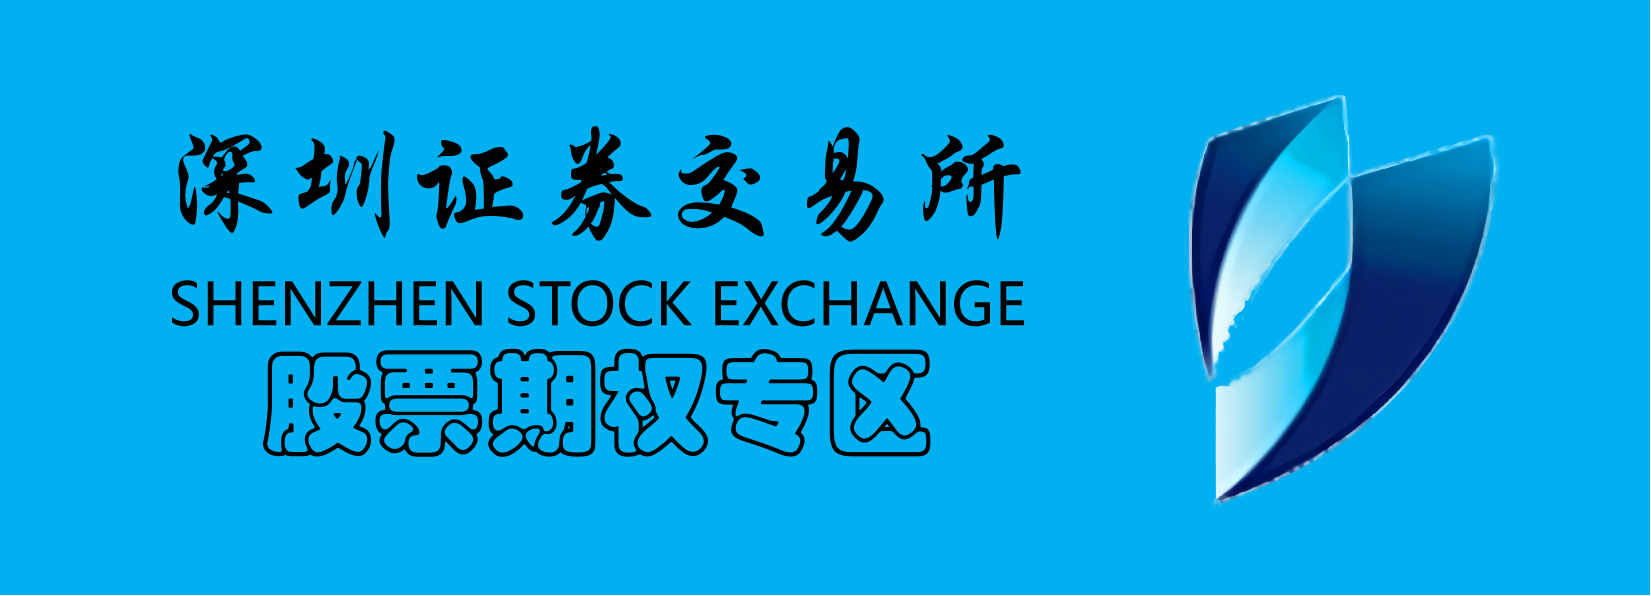 深圳證券交易所logo